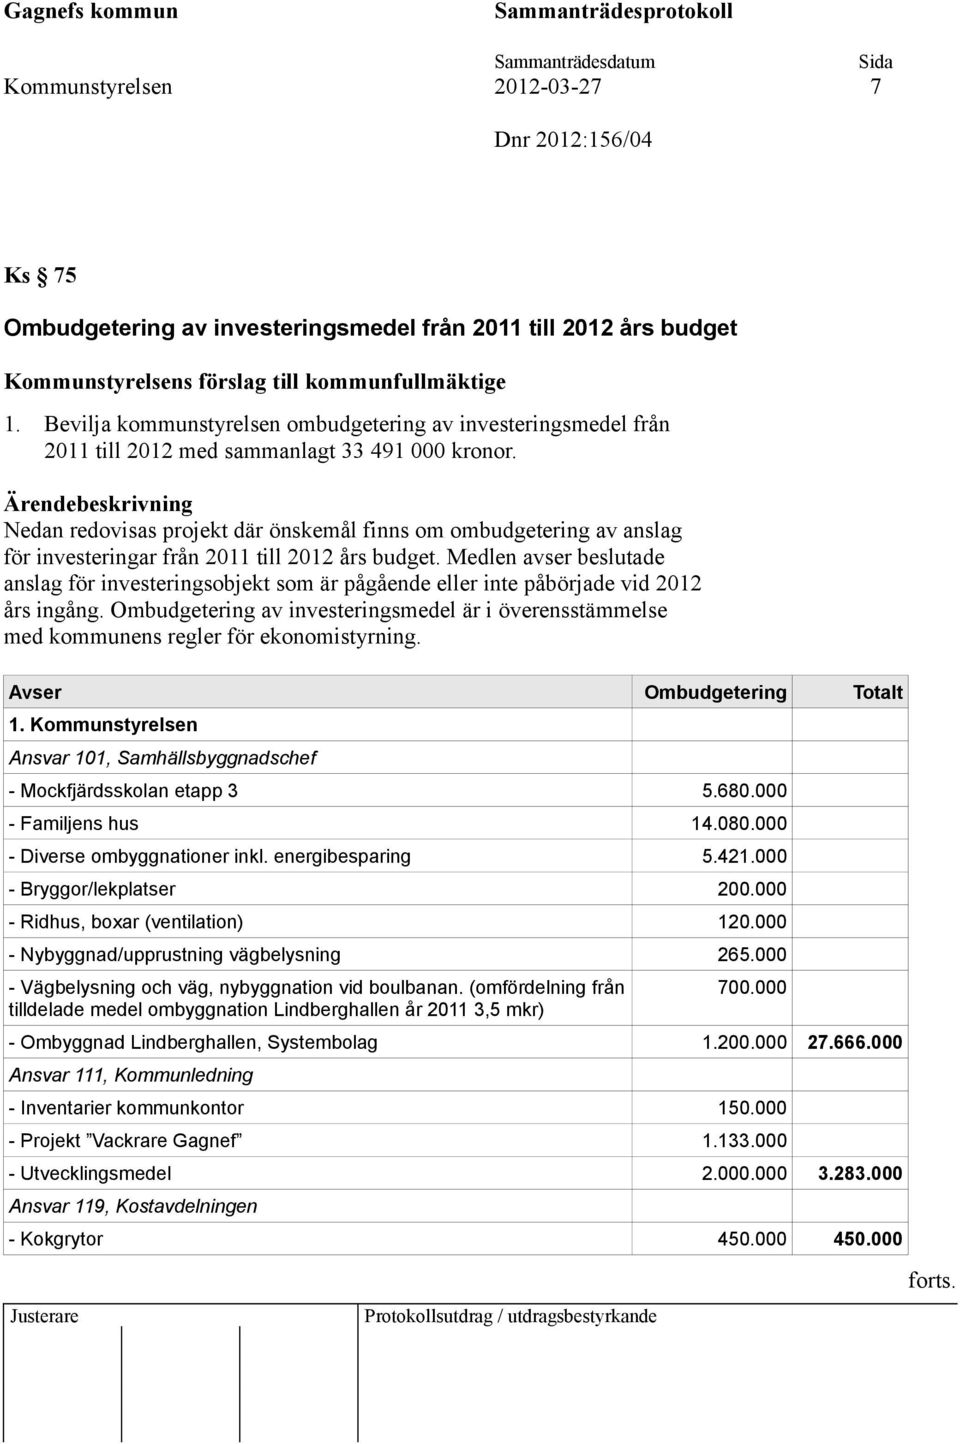 Nedan redovisas projekt där önskemål finns om ombudgetering av anslag för investeringar från 2011 till 2012 års budget.